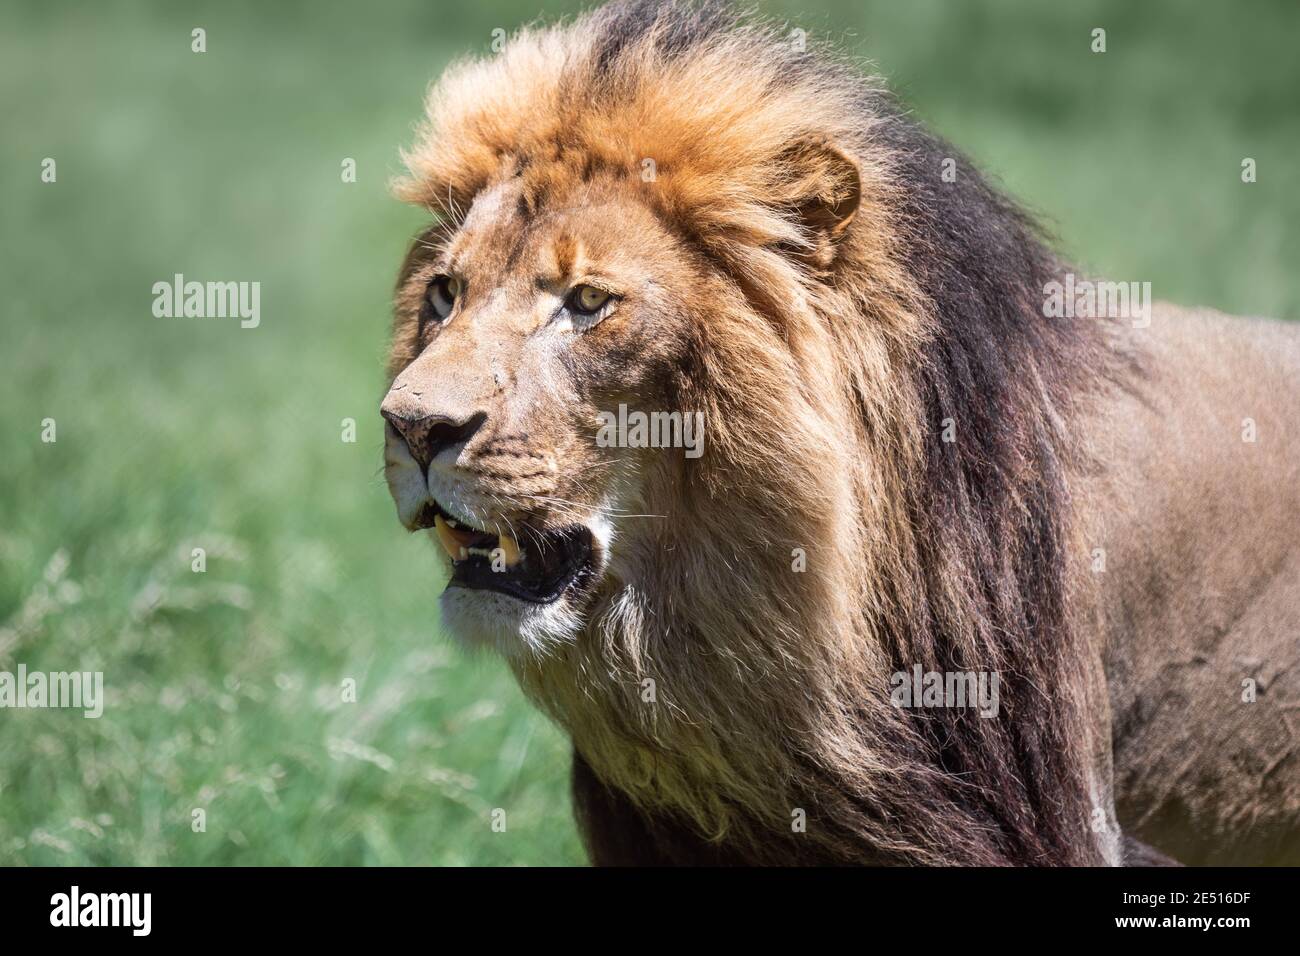 Gros plan d'un grand lion mâle rugissant, sur fond vert bokeh Banque D'Images